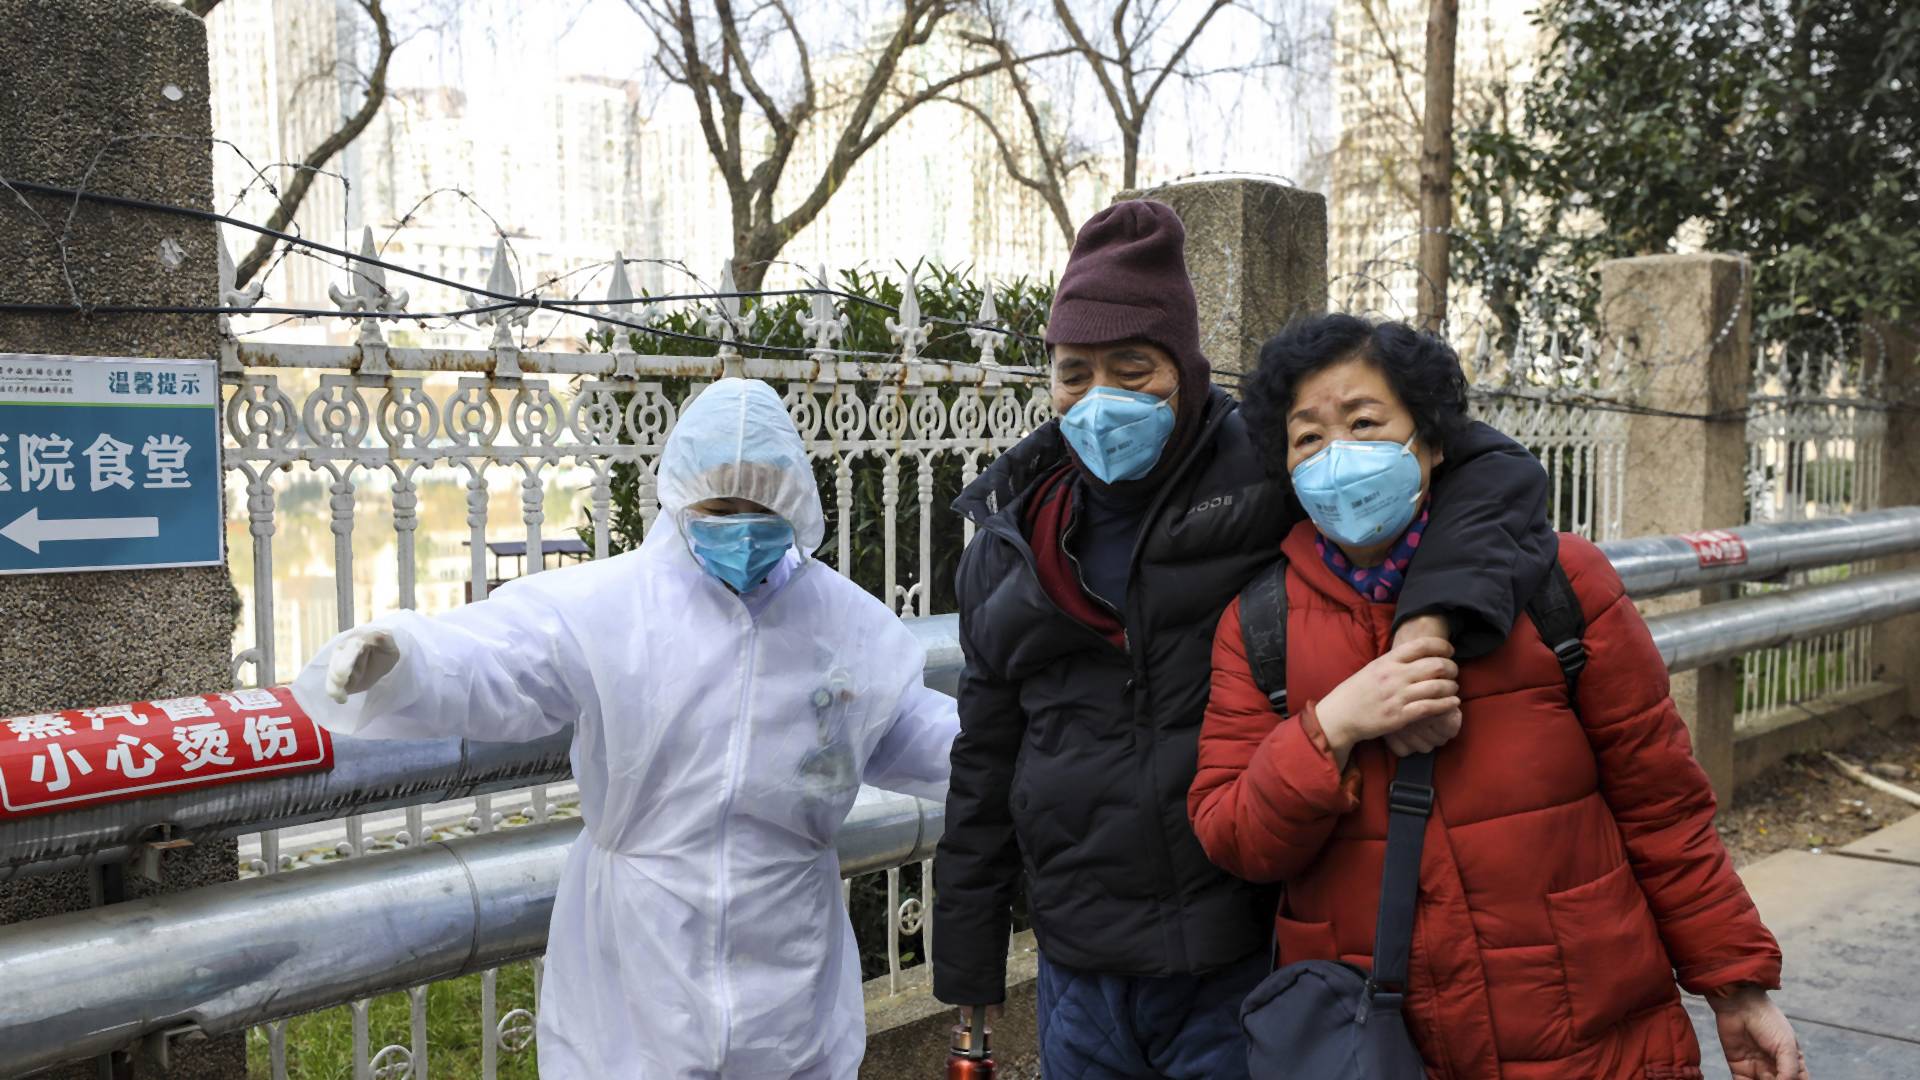 Obmedzenie dopravy, ľudia v karanténe: Koronavírus spôsobil zlepšenie ovzdušia v Číne